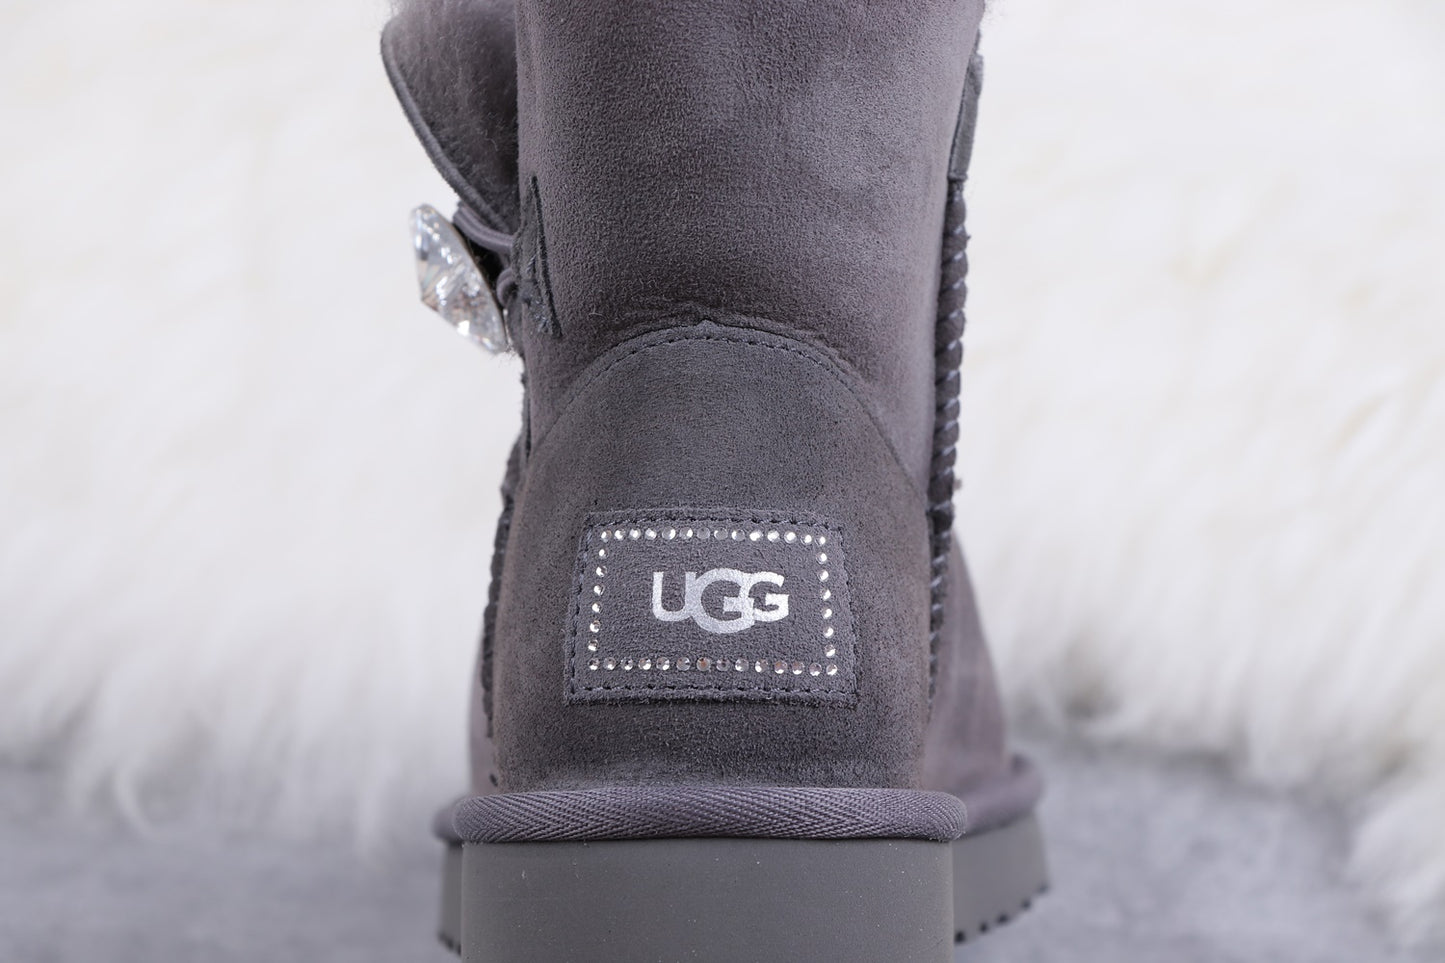 U-GG Boots